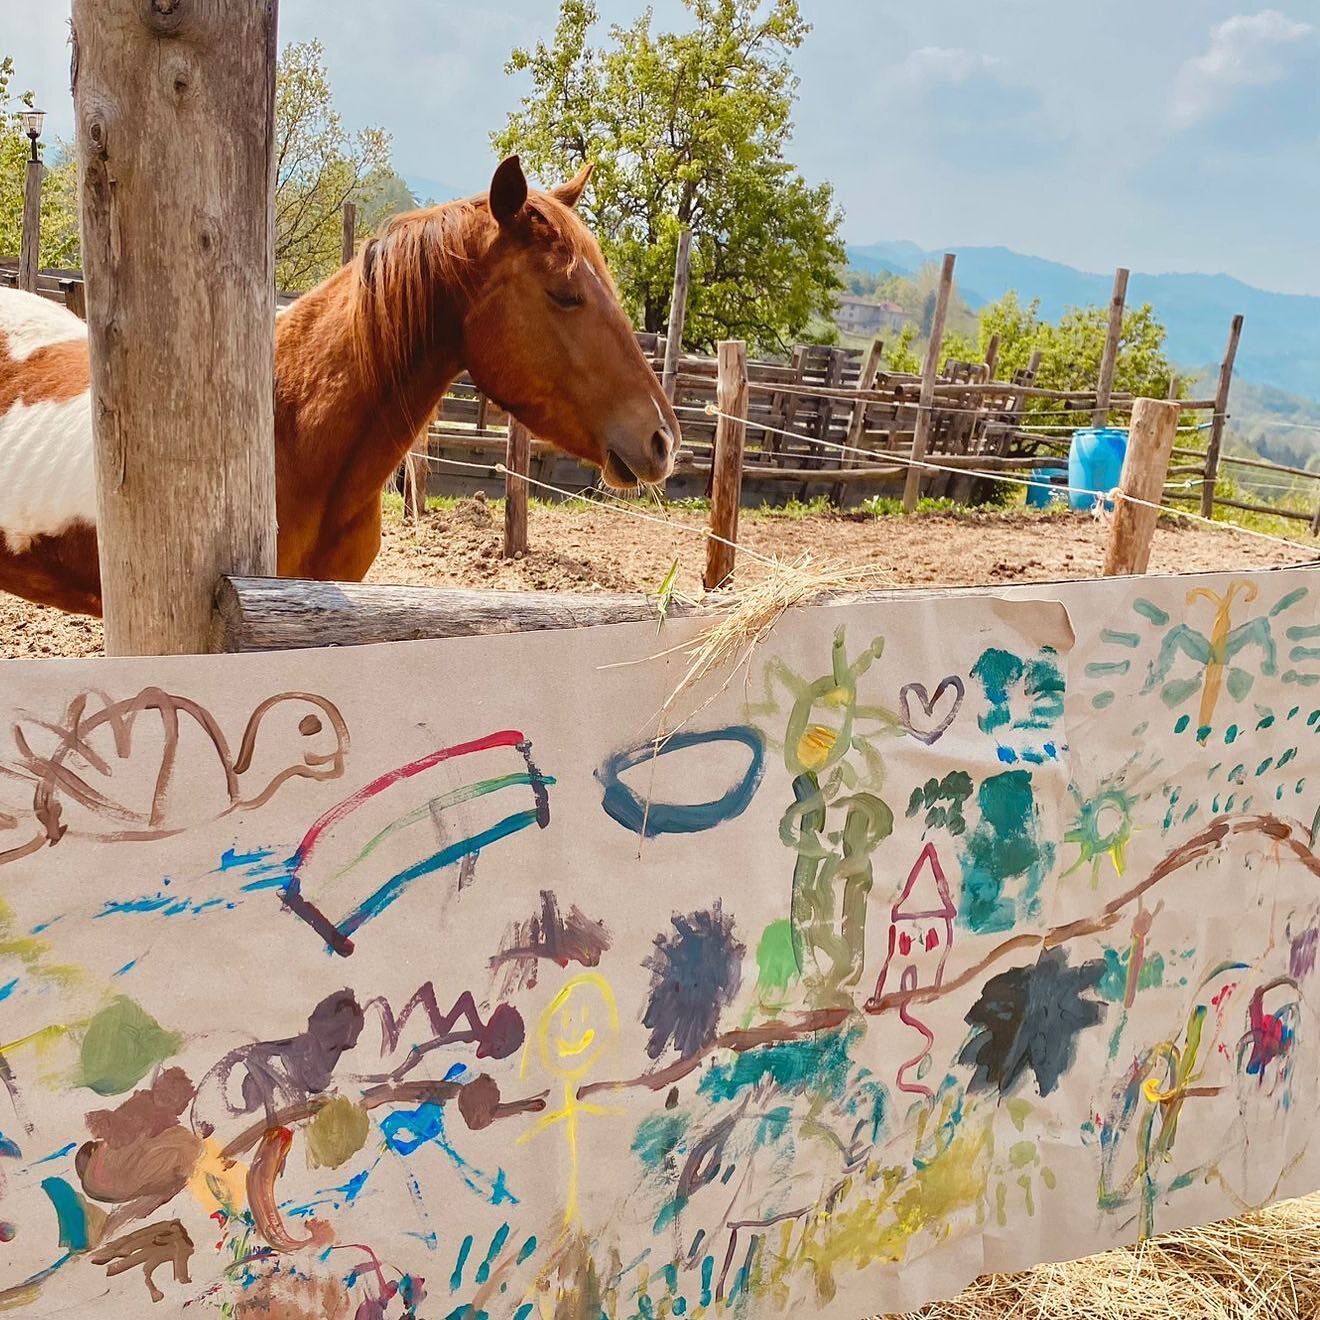 Brutta storia quella del cavallo da fattoria didattica e io che pensavo di essere nato nello Yellowstone 😂 #paint #horse